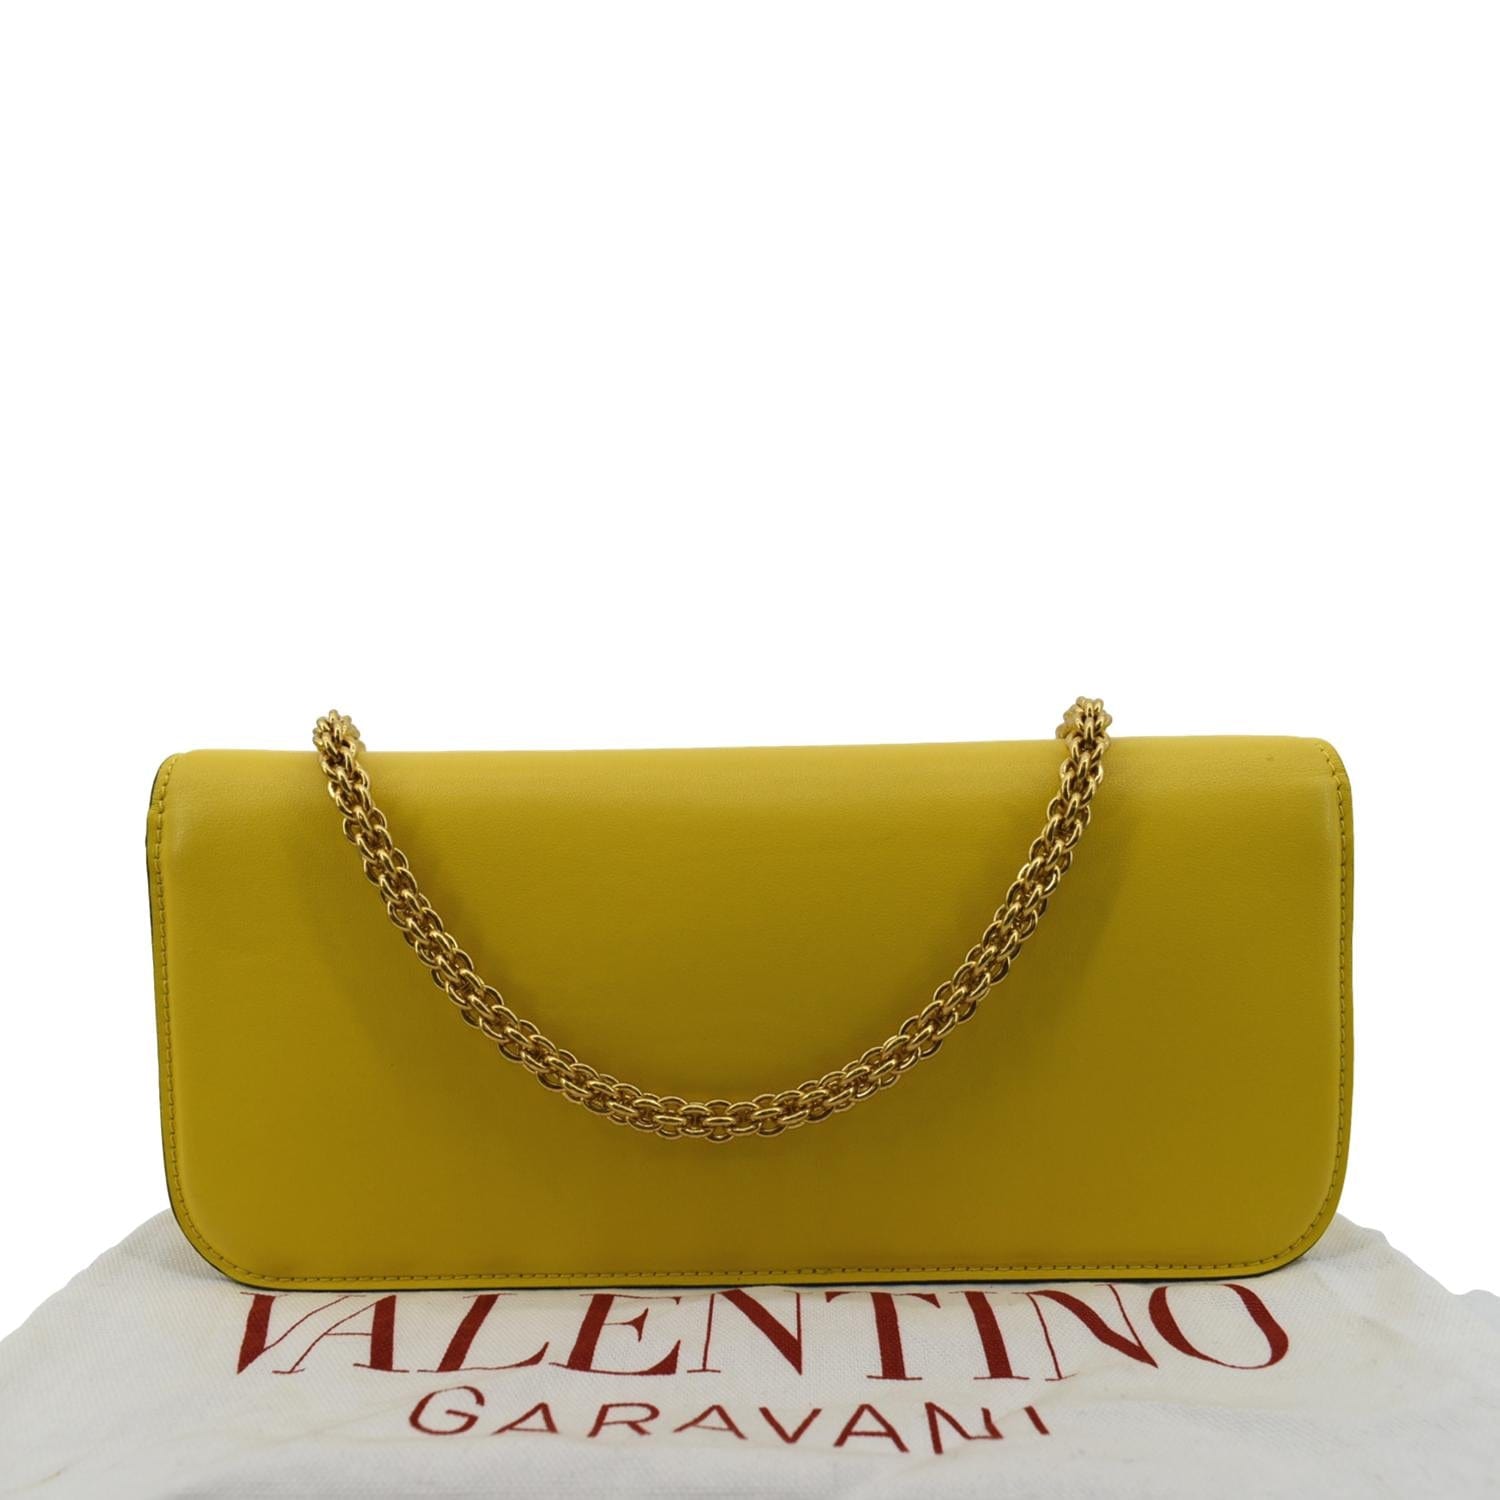 Valentino Garavani Loco Handbag